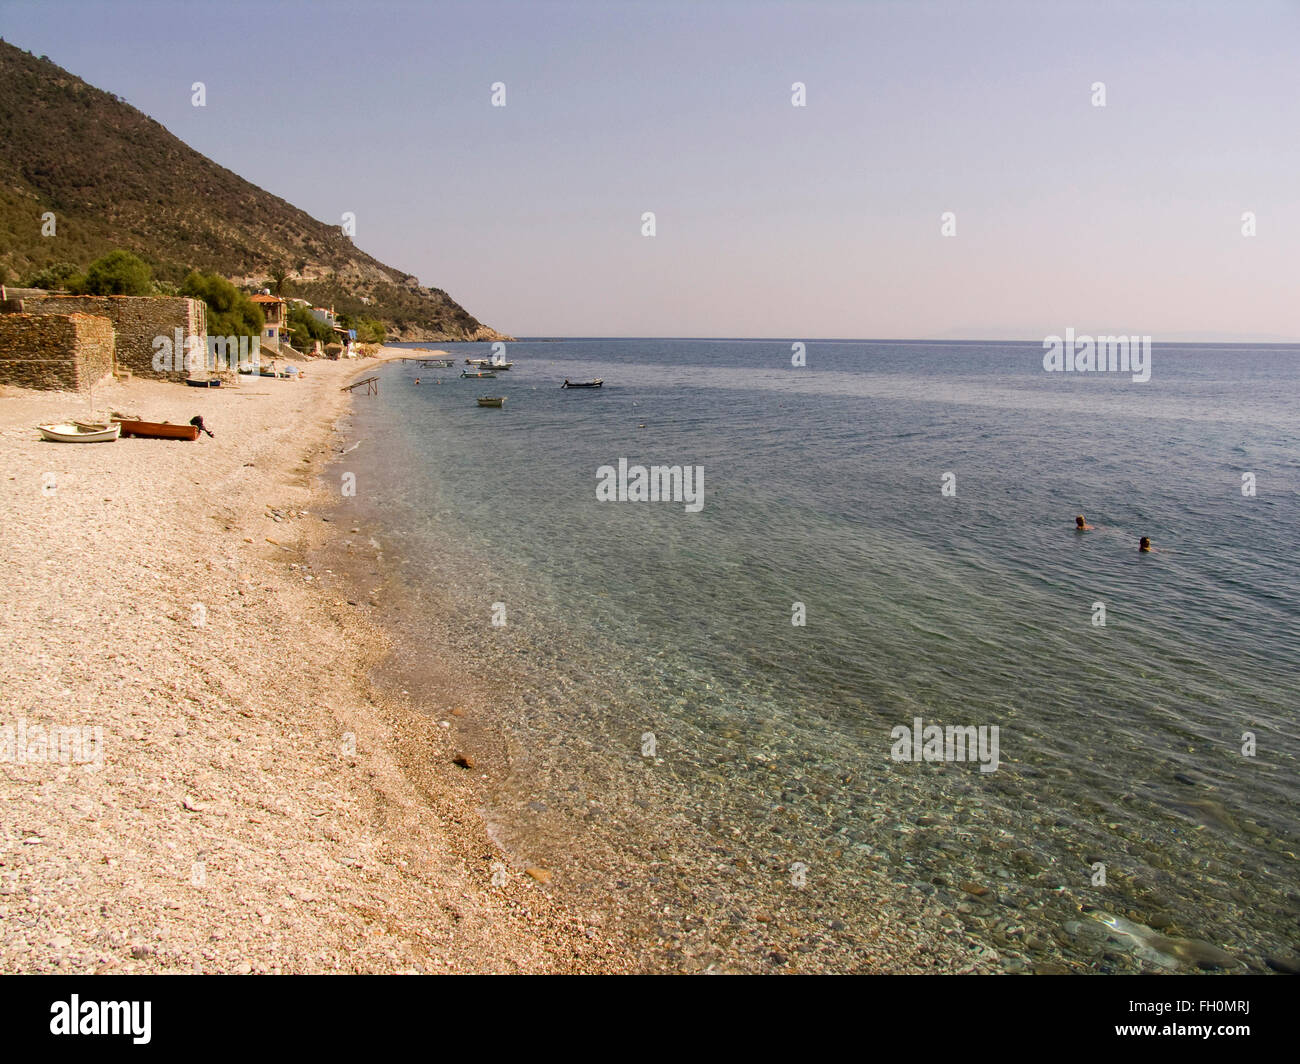 Melinta beach, km 138, l'île de Lesbos, au nord-ouest de la mer Égée, Grèce, Europe Banque D'Images